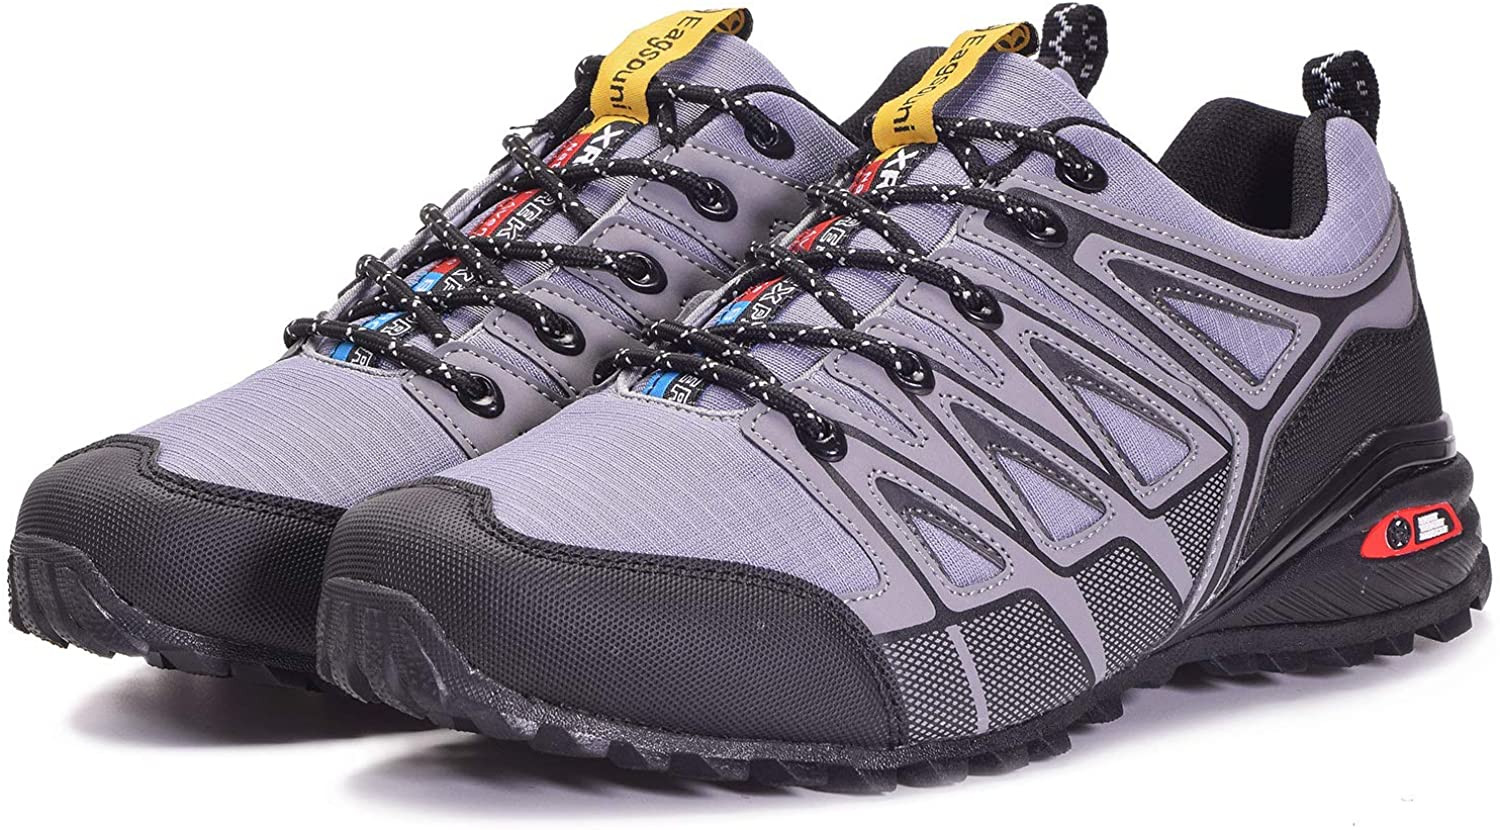 Zapatillas de Trail para Hombre Mujer Zapatos para Correr y Aire Libre y Deportes Calzado Deportivos Gimnasio Sneakers - Gris Claro - 41 EU